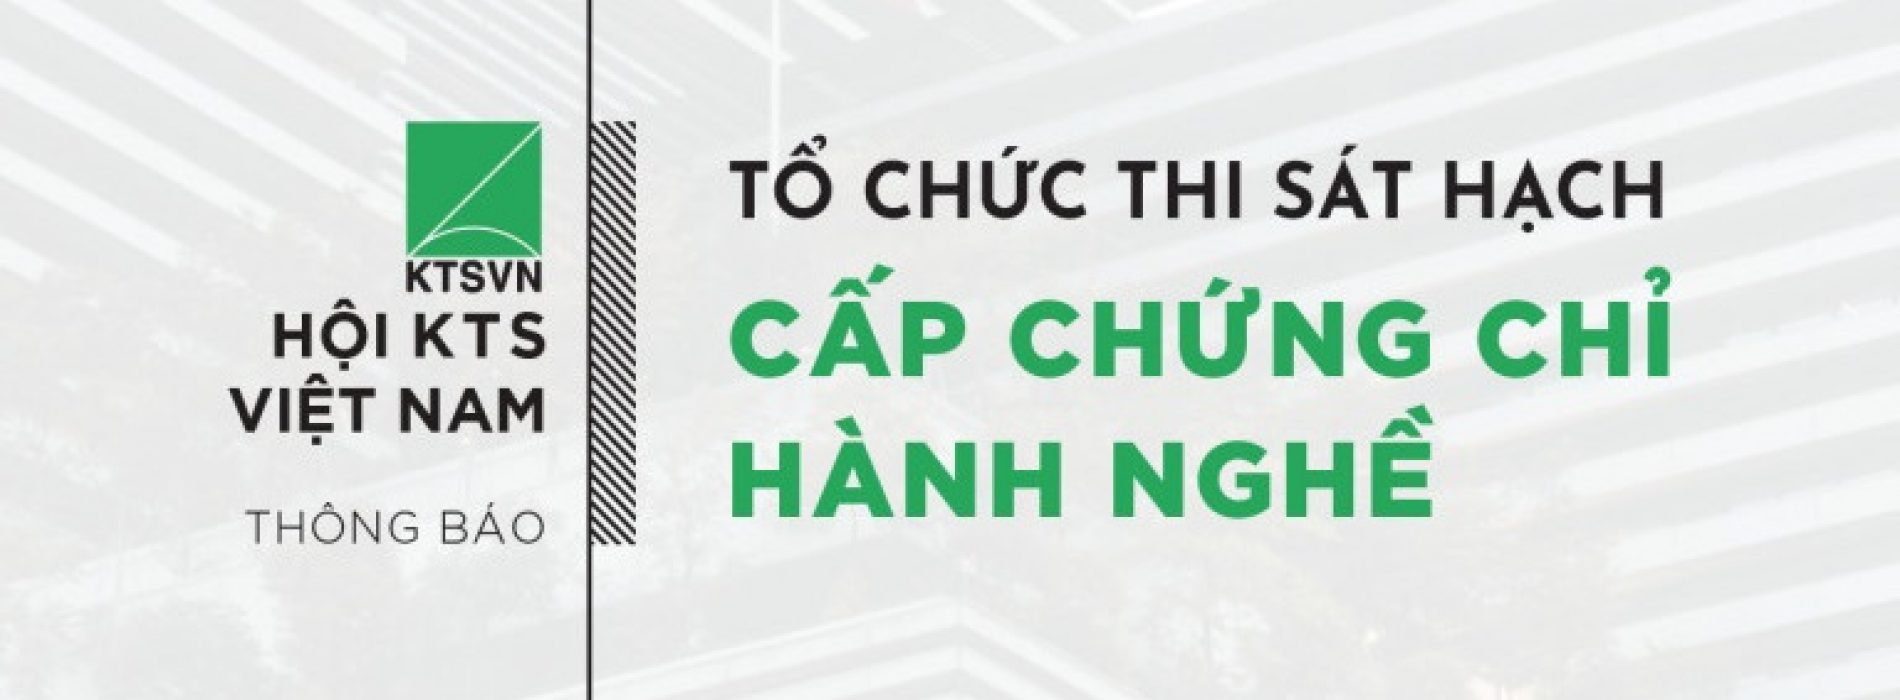 Hội KTS Việt Nam tổ chức Kỳ thi sát hạch phục vụ Cấp chứng chỉ Hành nghề Kiến trúc kỳ thứ 4